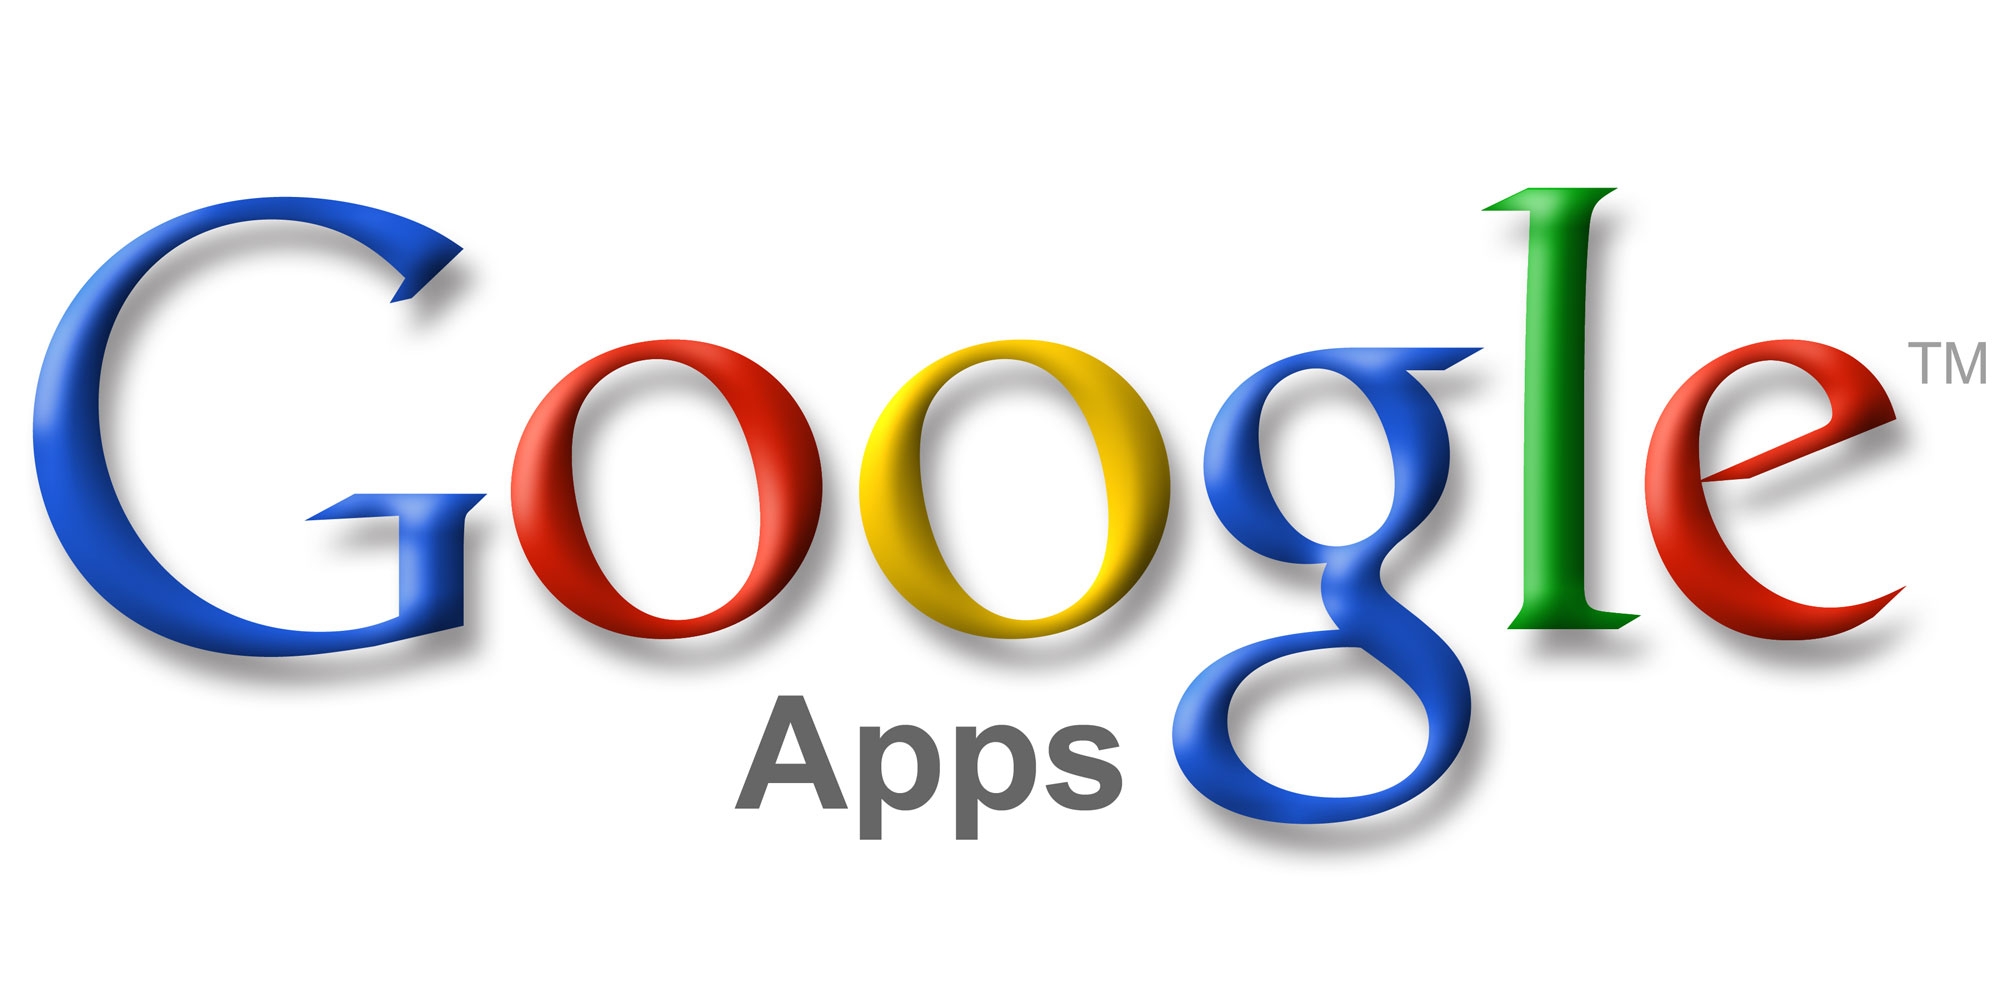 Google-Apps-logo-large